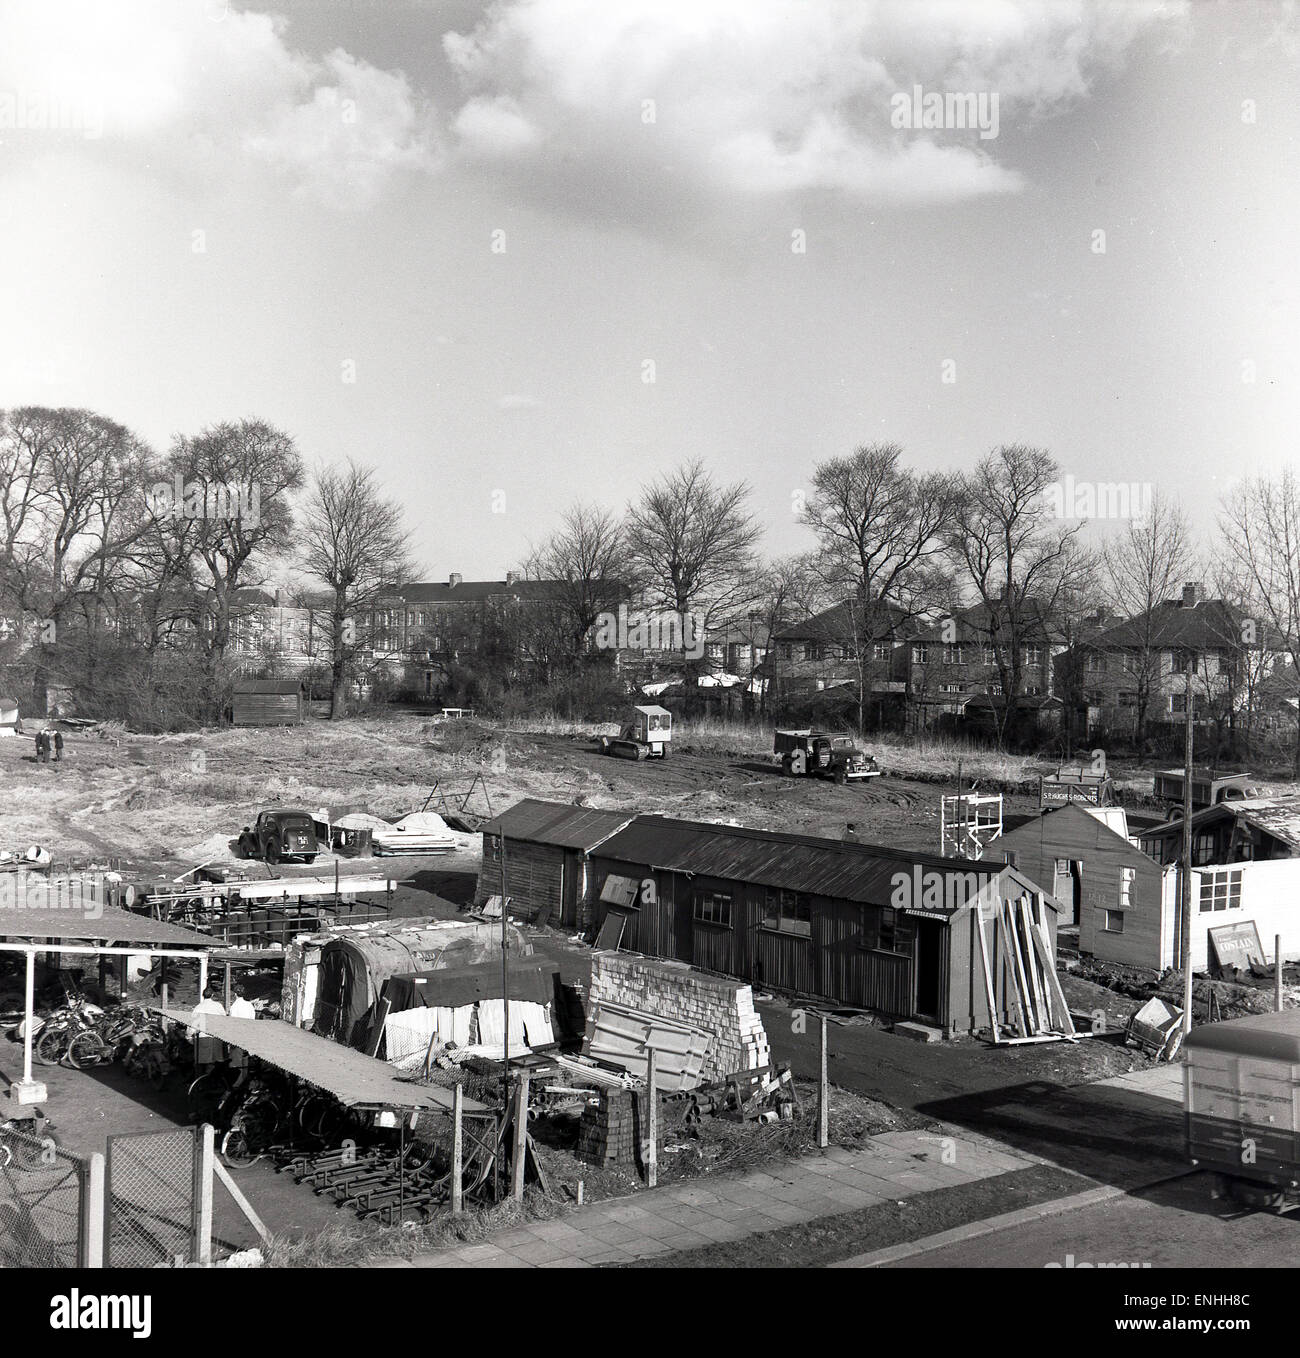 Storico degli anni cinquanta, un cantiere edile, un appezzamento di terra essendo preparato e livellati per il nuovo alloggiamento. Foto Stock